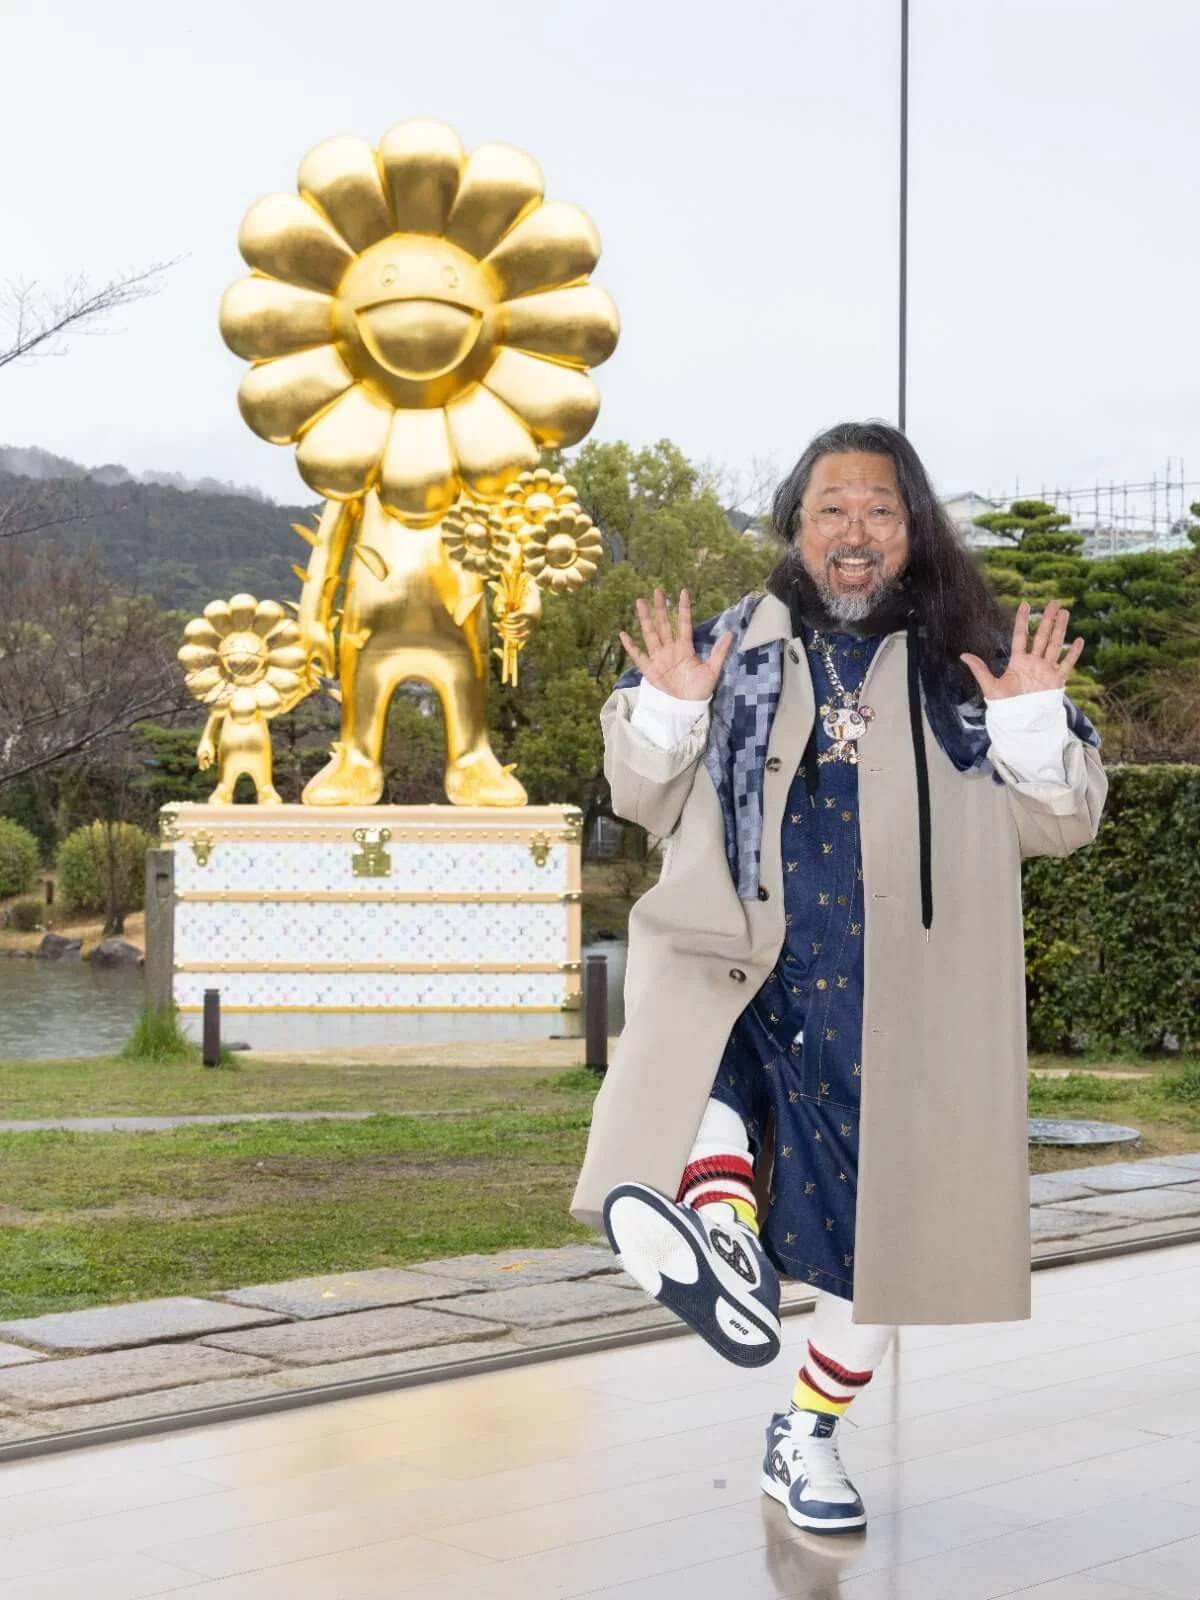 村上隆與LV合作的巨型金色雕塑《FLOWER PARENT AND CHILD》於京都市 